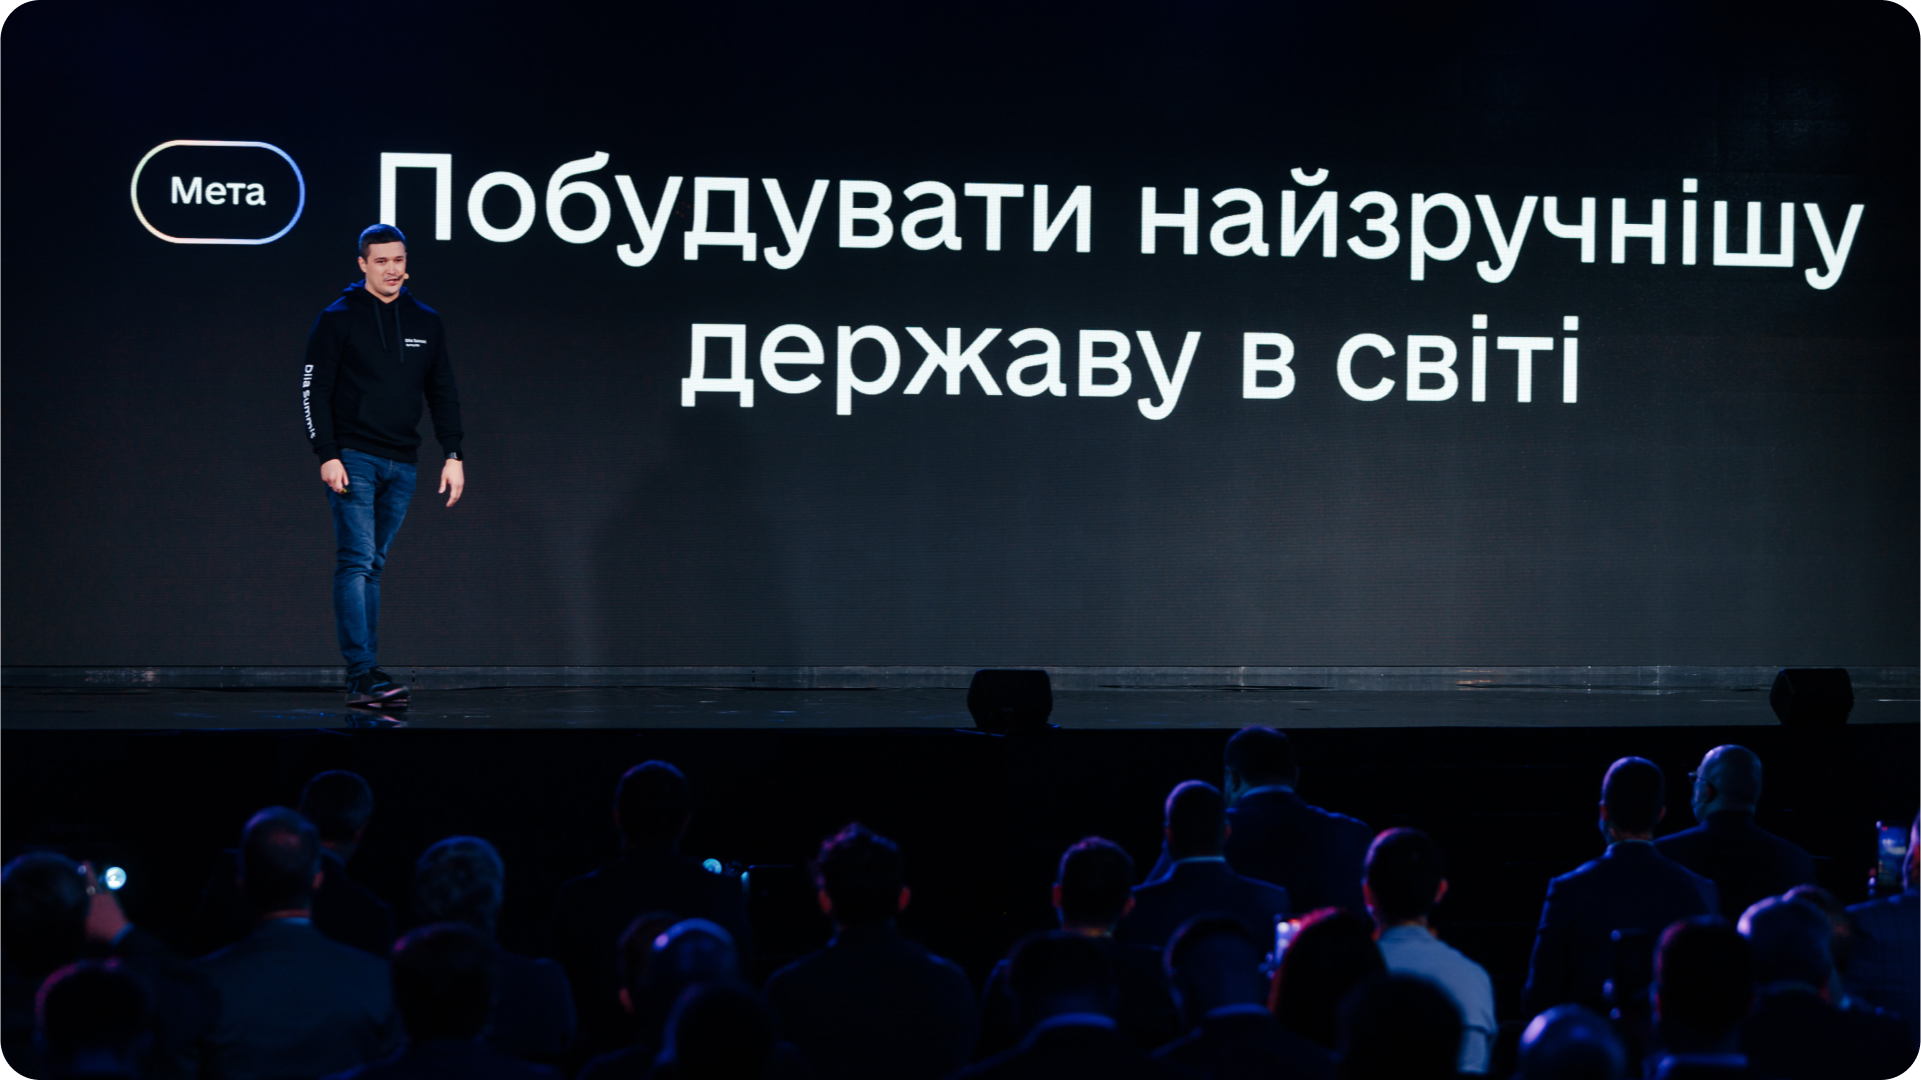 Михайло Федоров презентує мету Міністерства цифрової трансформації — «Побудувати найзручнішу державу в світі